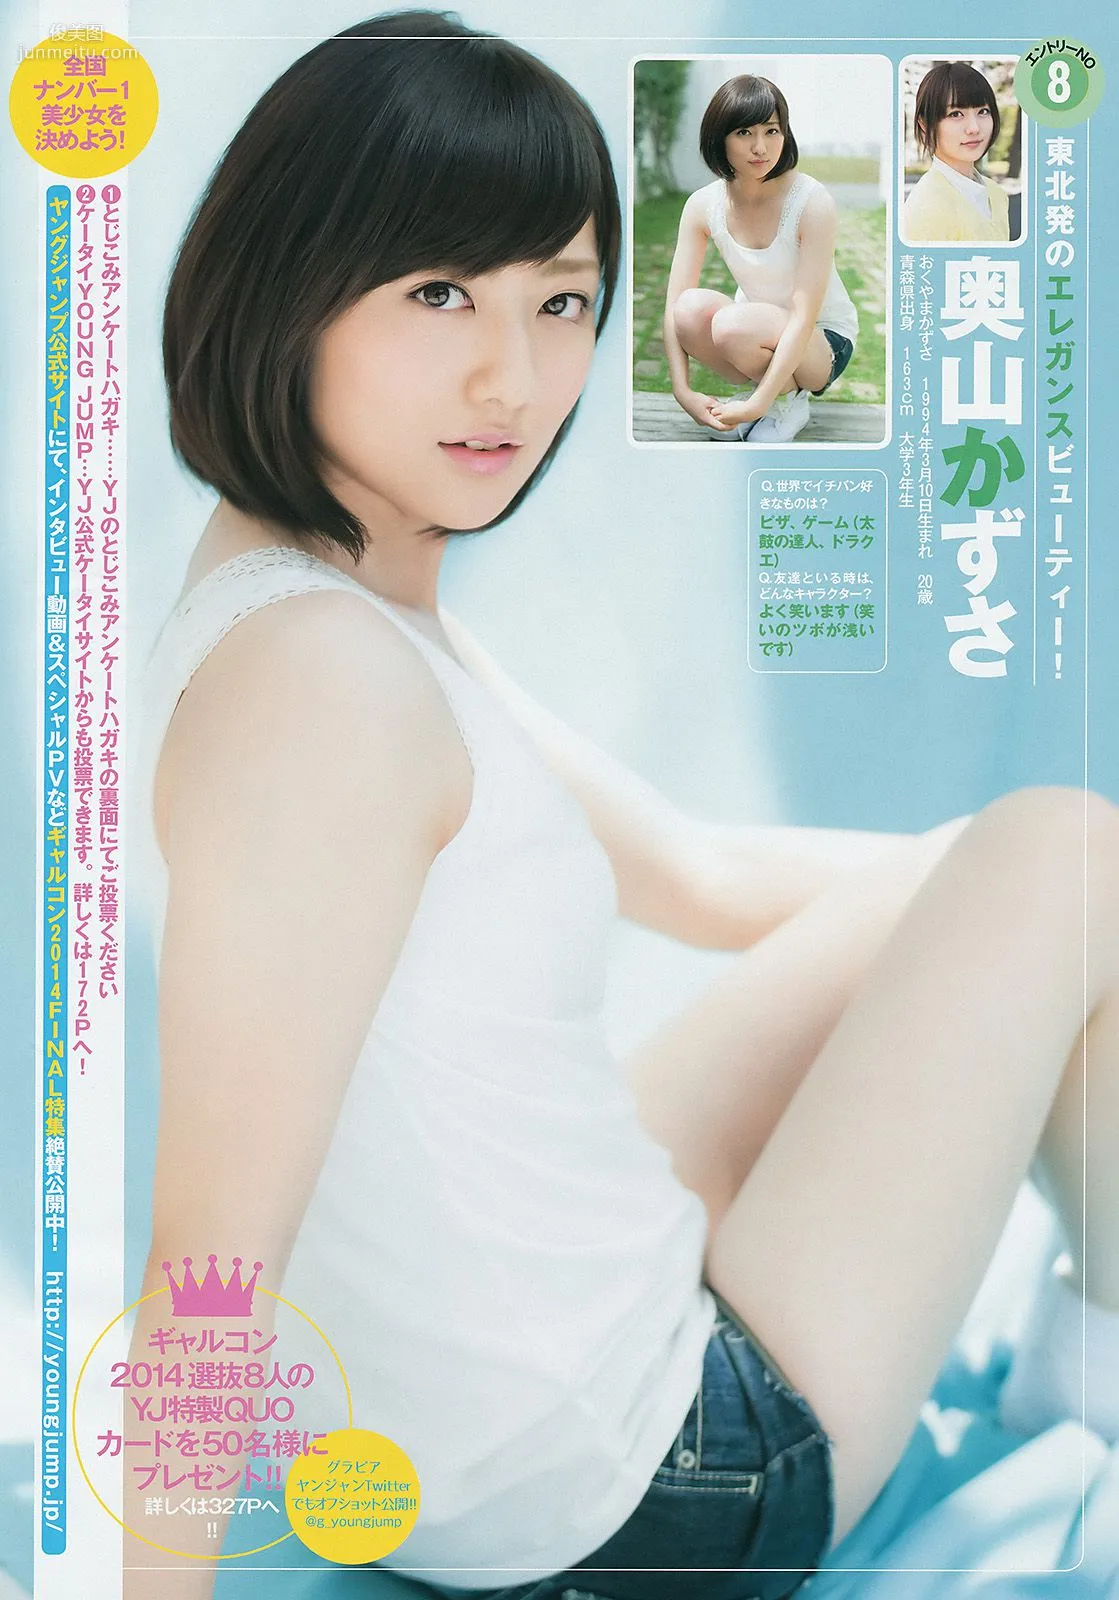 ギャルコン2014 制コレ アルティメット2014 大阪DAIZY7 [Weekly Young Jump] 2014年No.42 写真杂志9